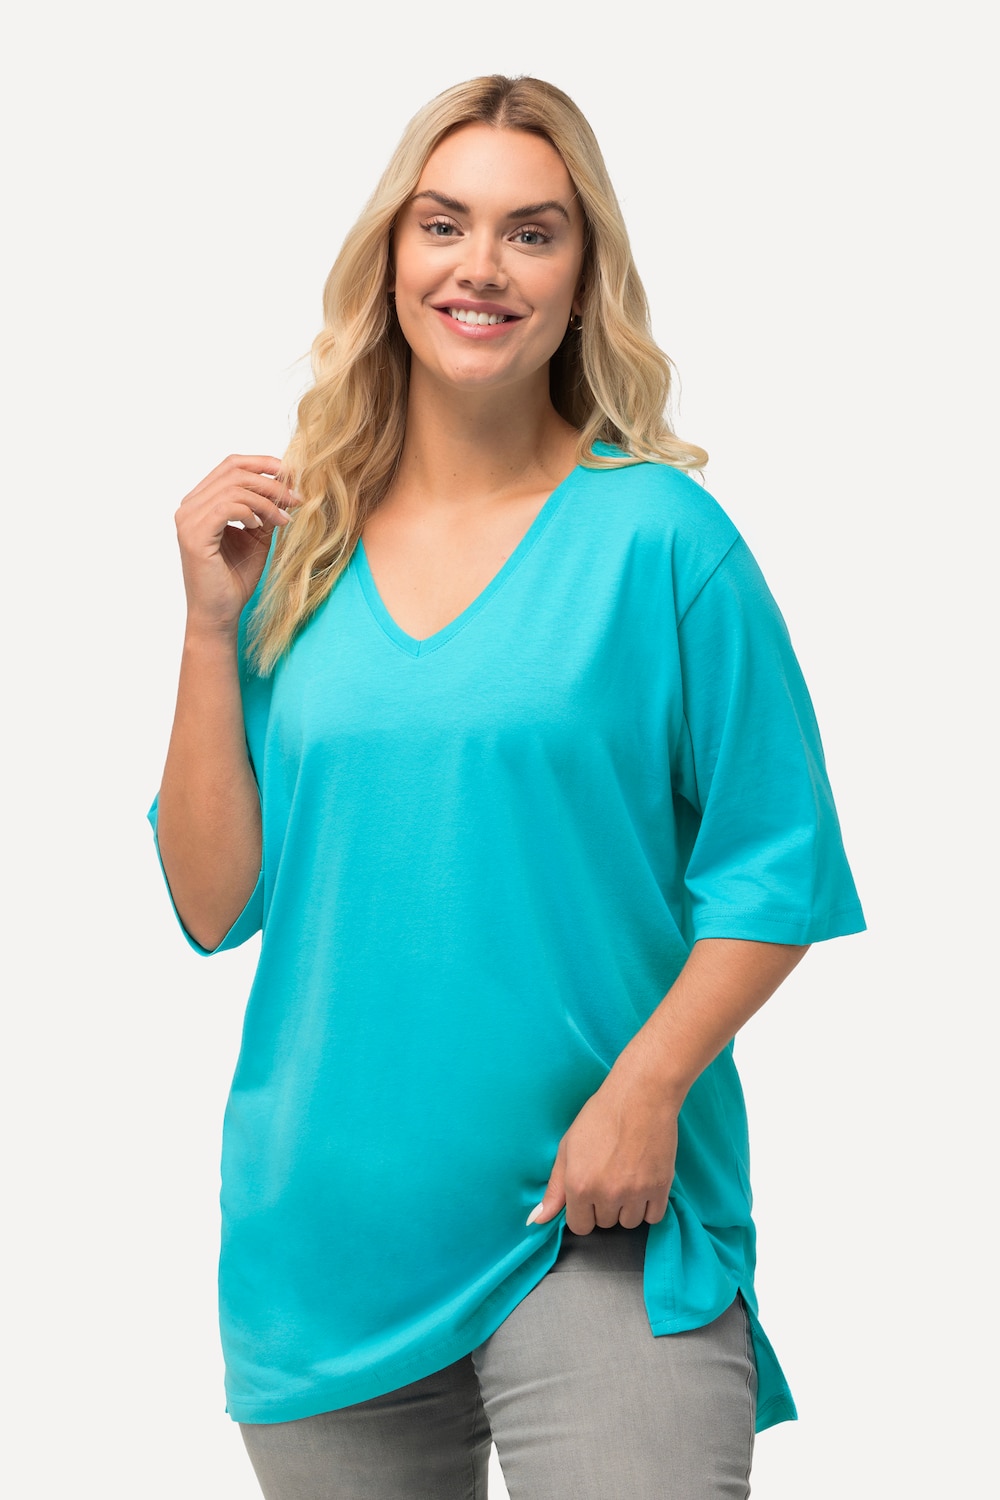 Große Größen T-Shirt, Damen, türkis, Größe: 50/52, Baumwolle/Viskose, Ulla Popken von Ulla Popken